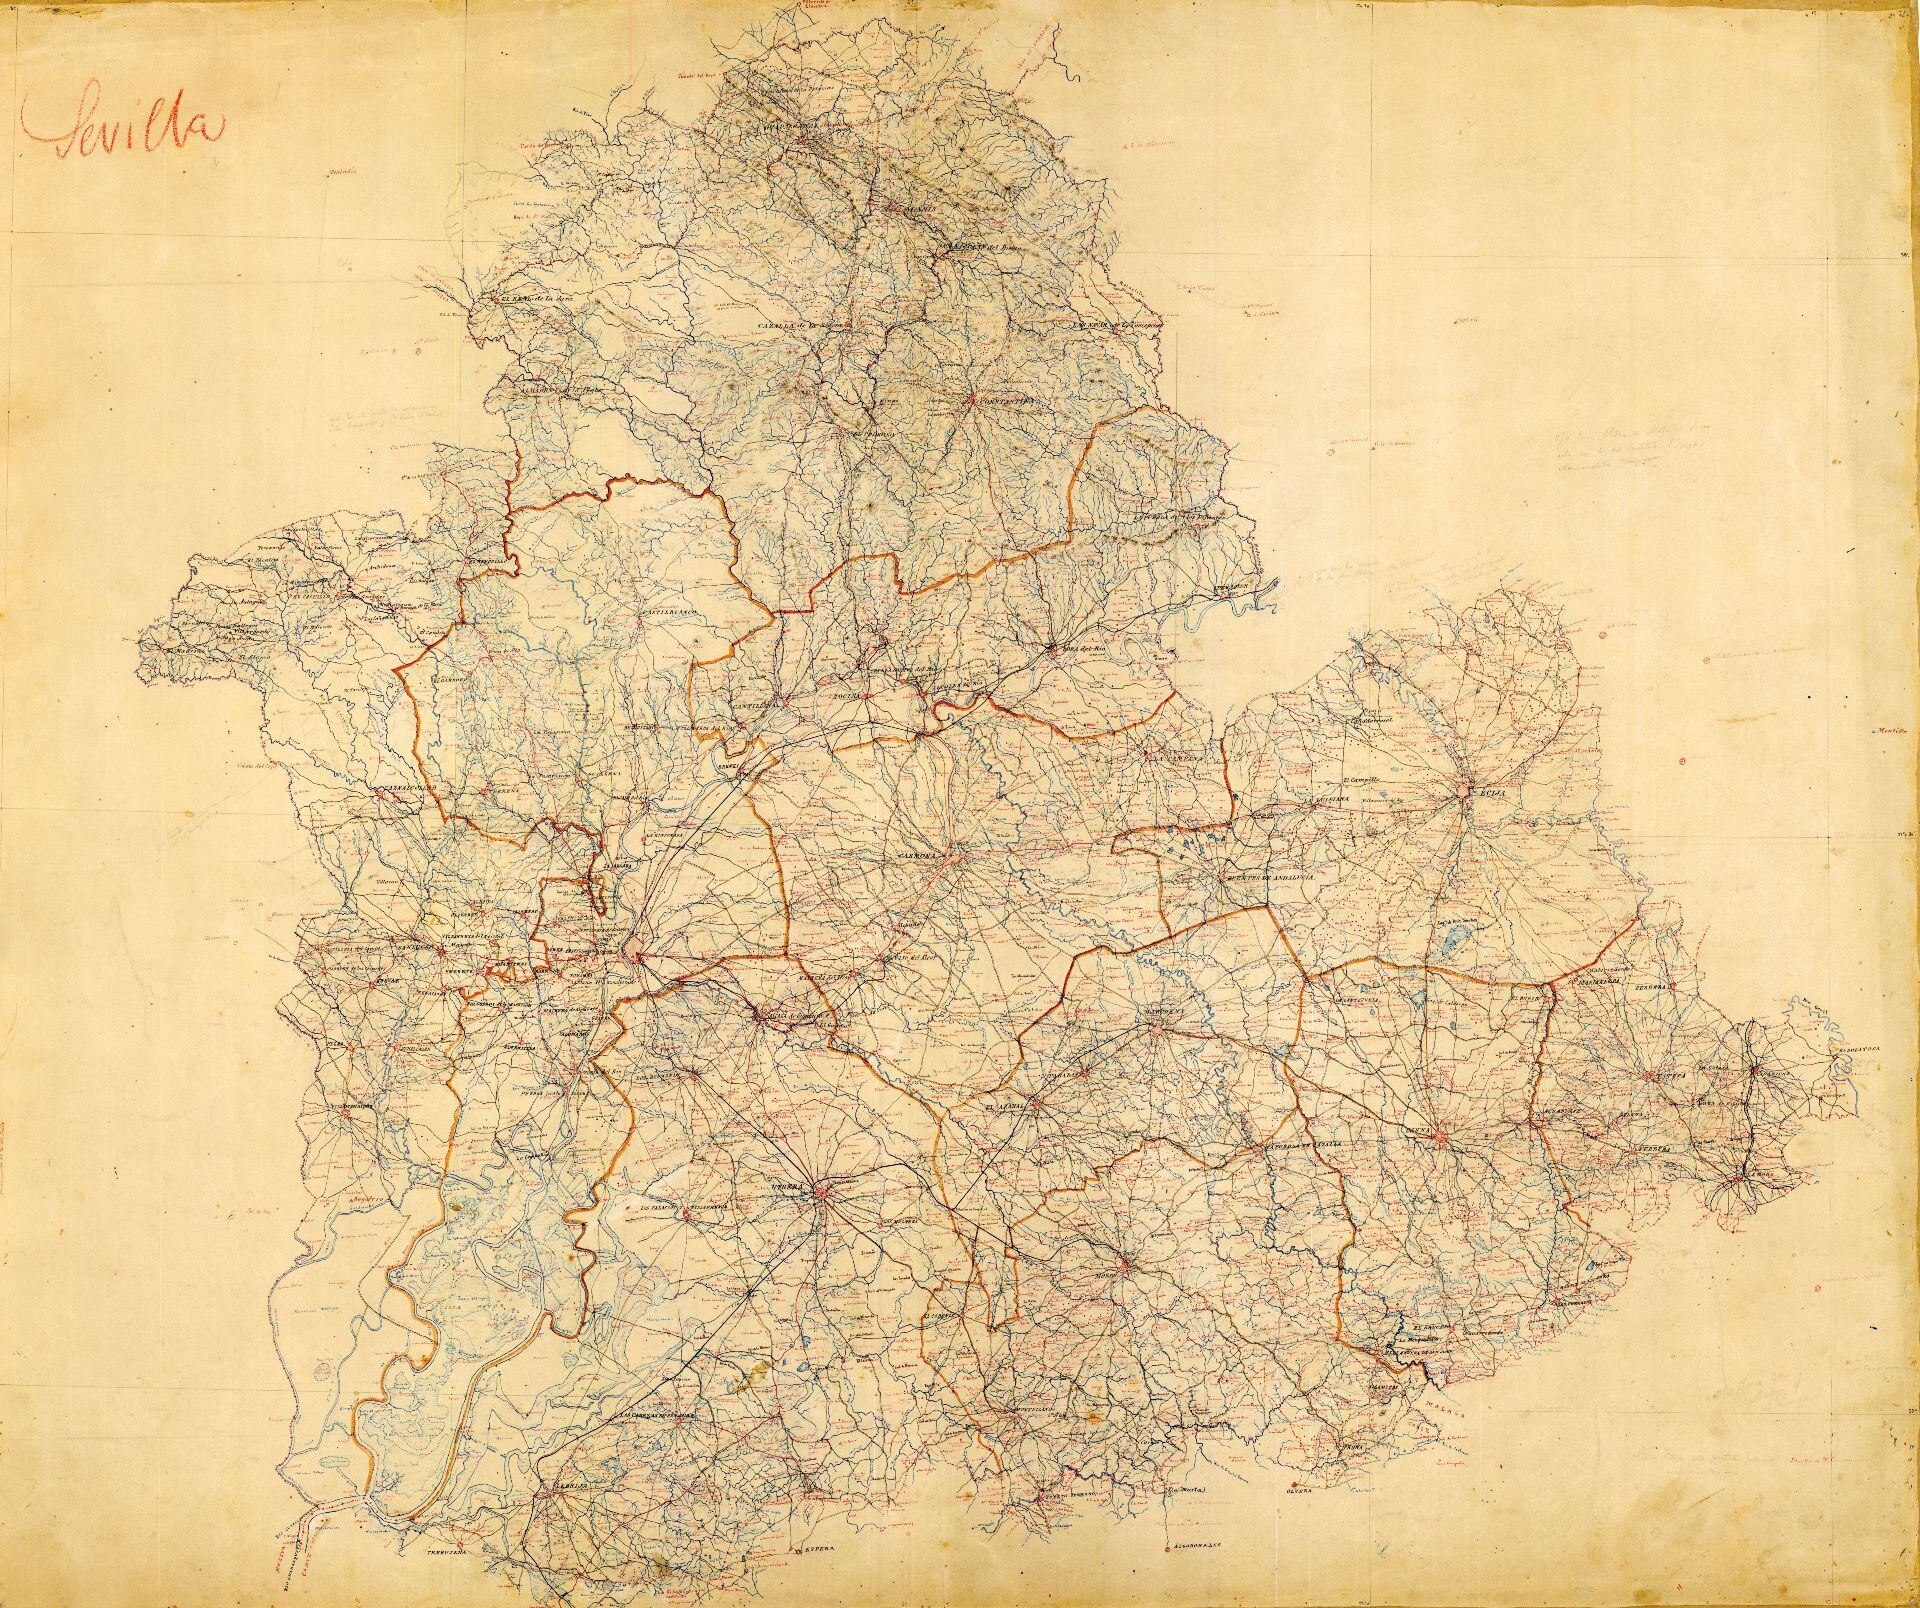 Borrador del mapa de Sevilla realizado por Francisco Coello y su equipo hacia 1869.